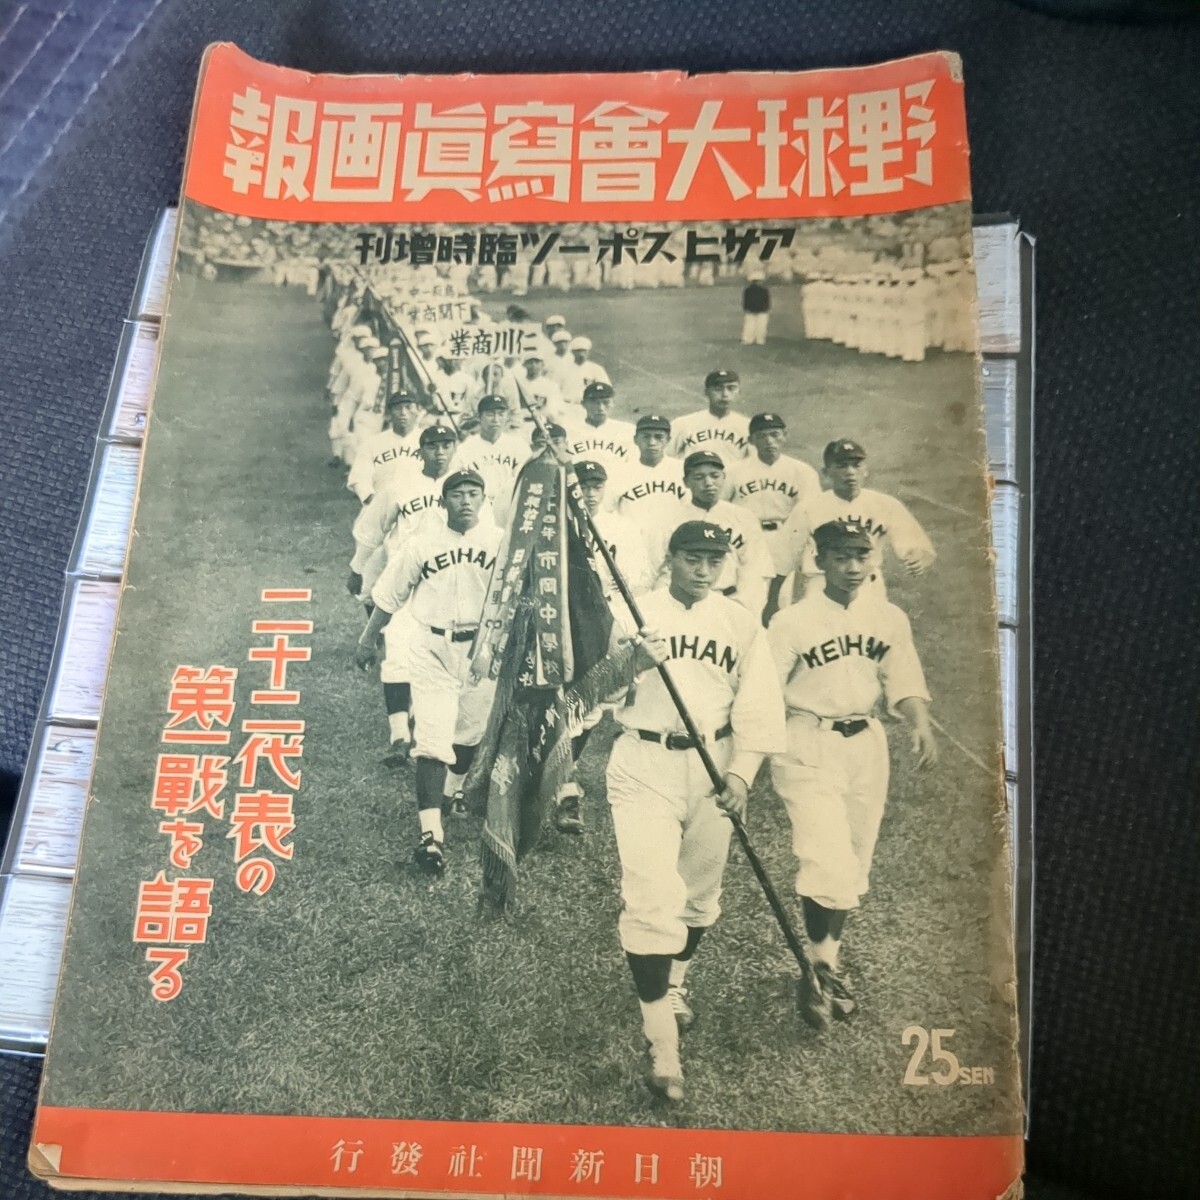 昭和十三年 野球大會写真画報  アサヒスポーツ臨時増刊 高校野球 昭和レトロの画像1